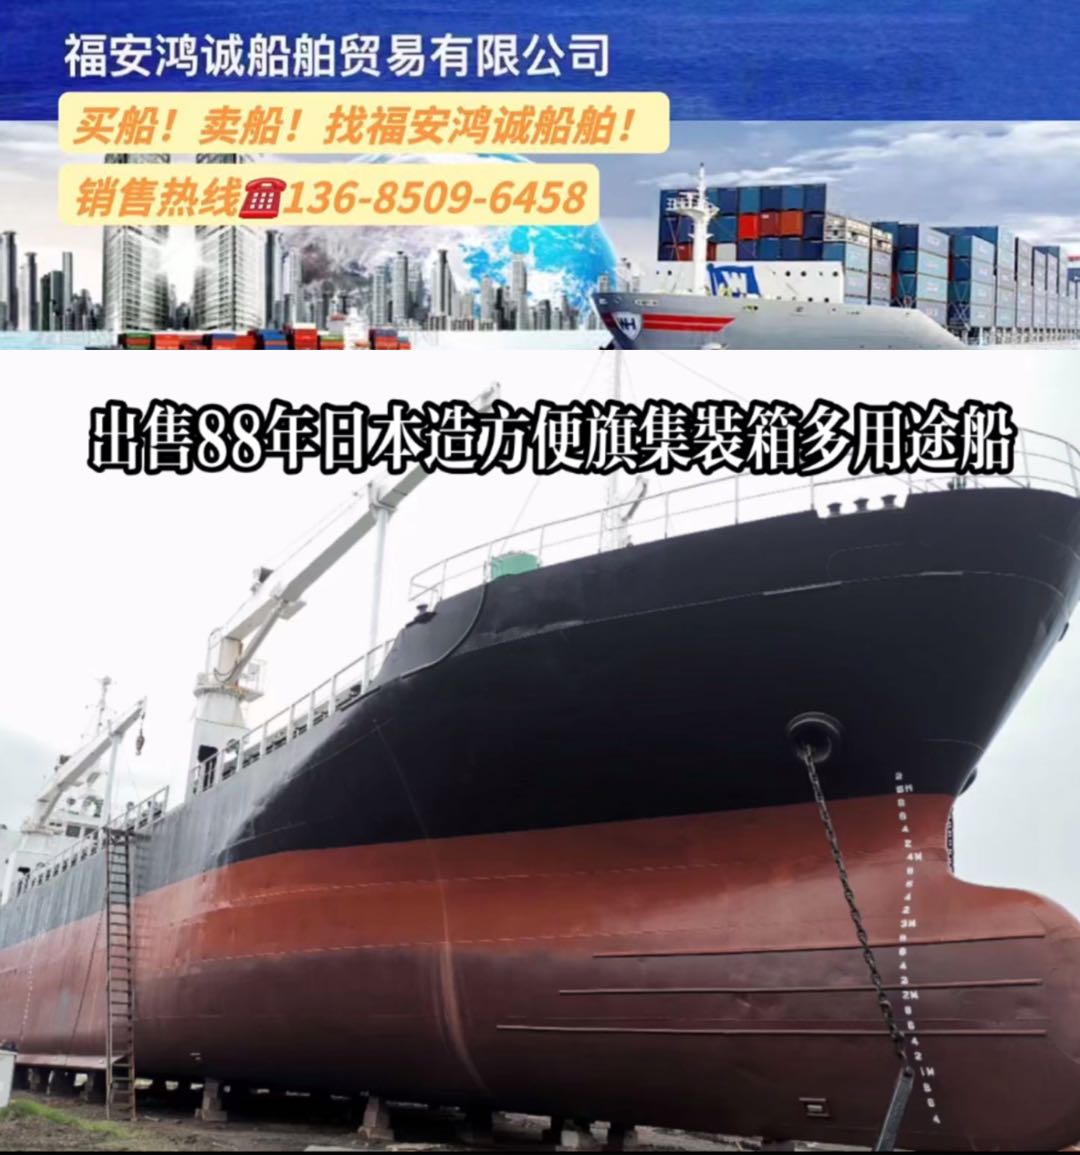 出售88年日本造集装箱多用途船